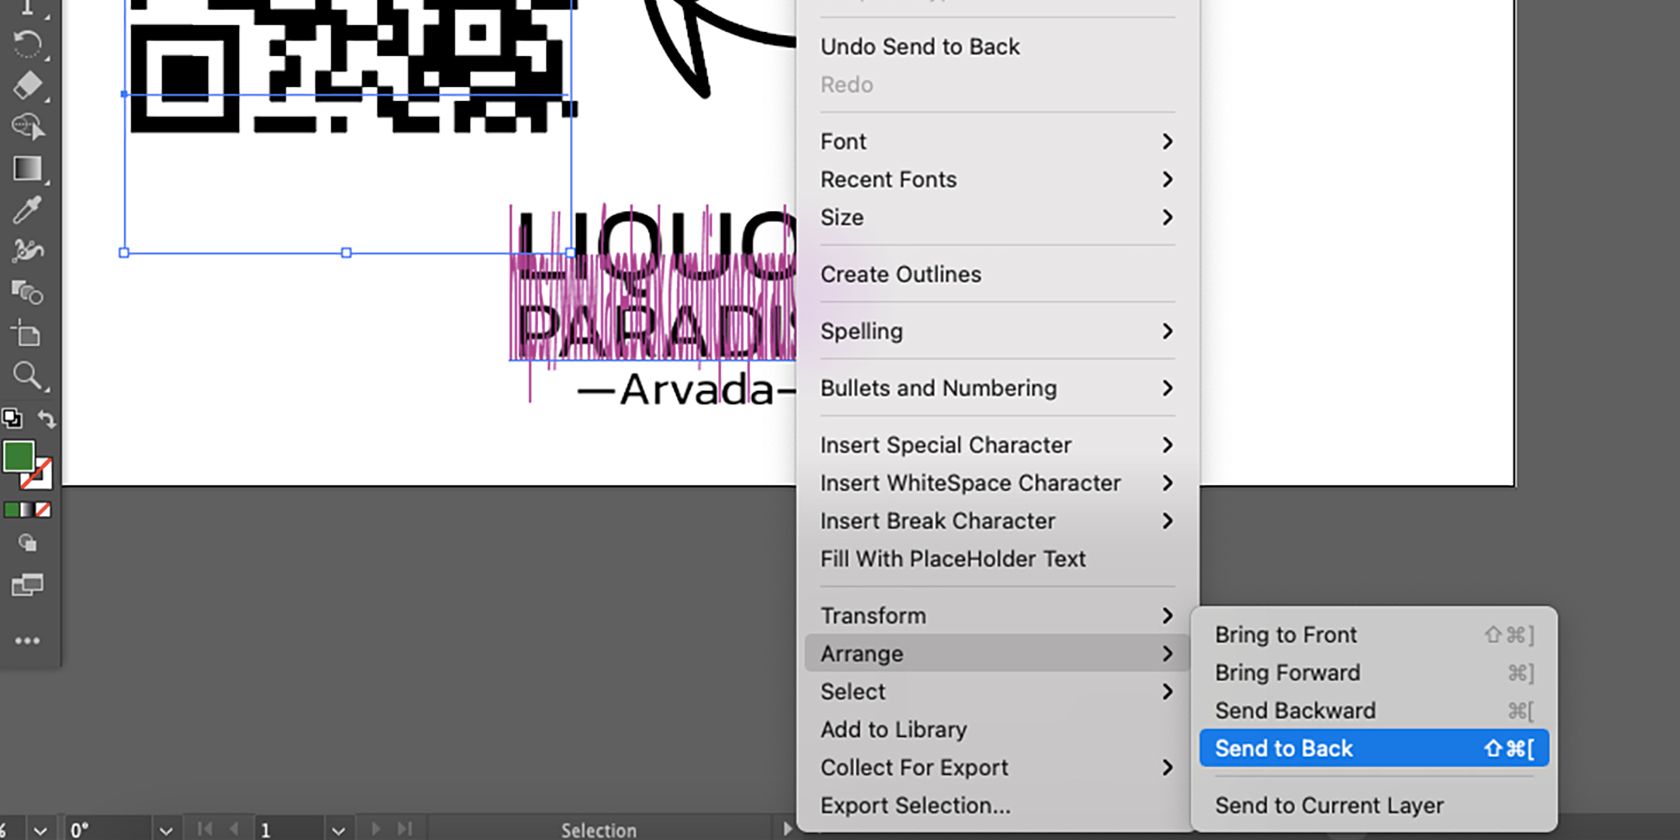 Opções de envio para trás do Adobe Illustrator.